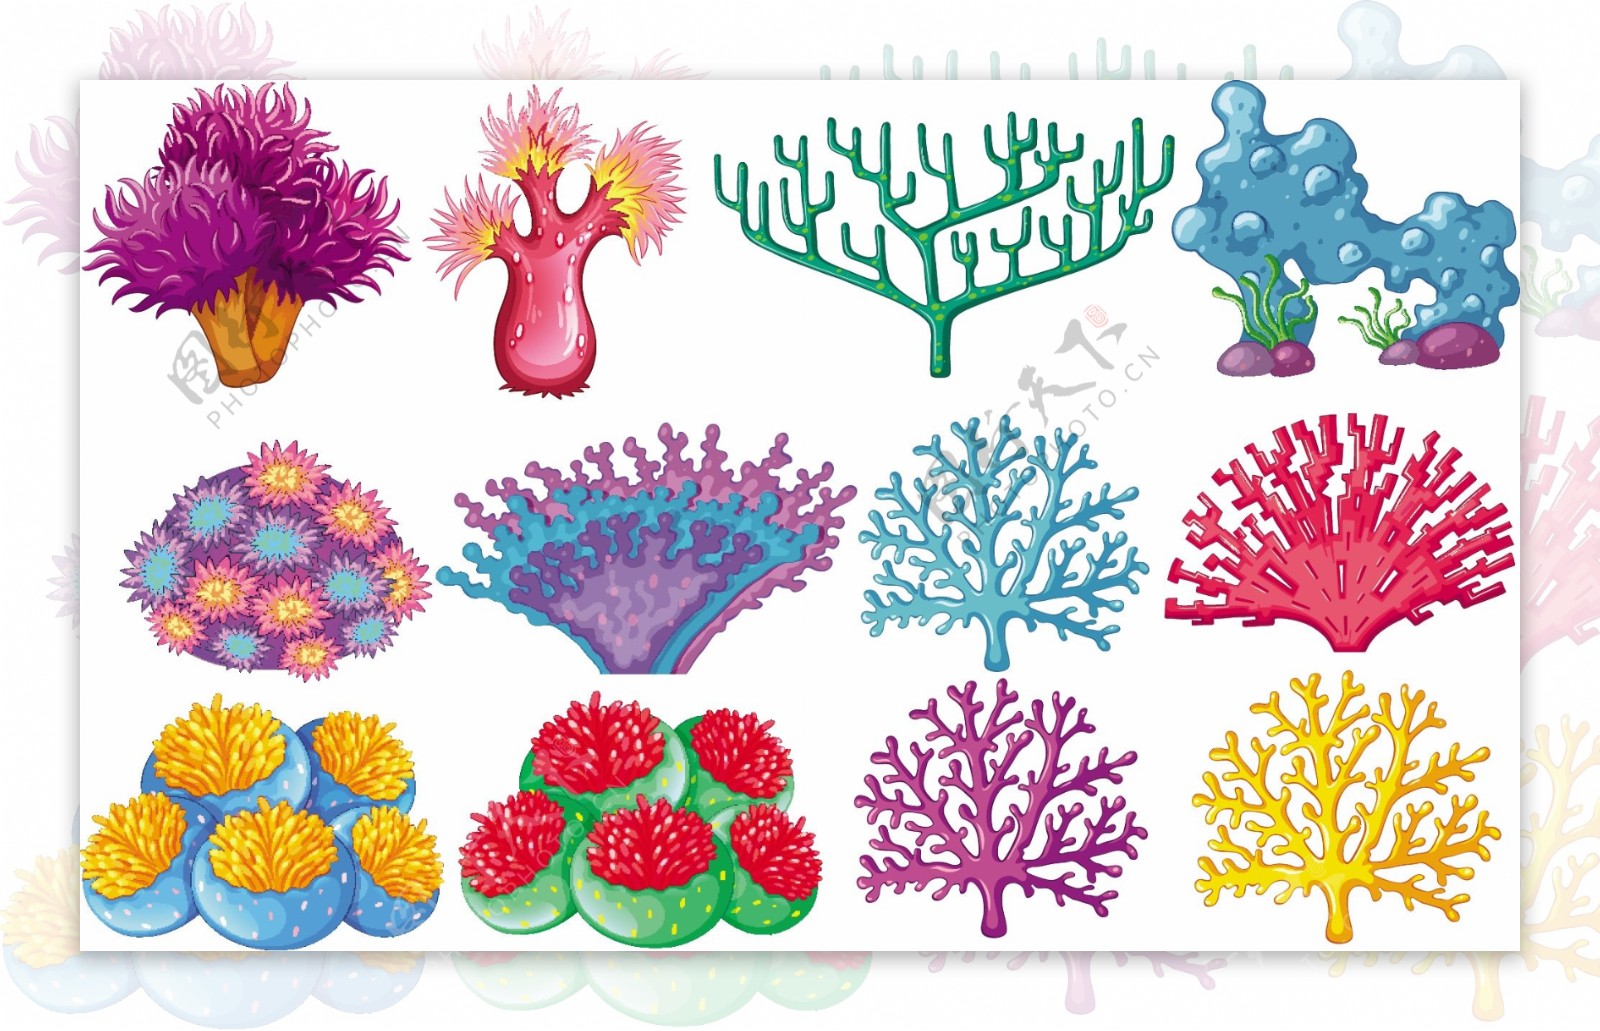 不同类型的珊瑚礁插图